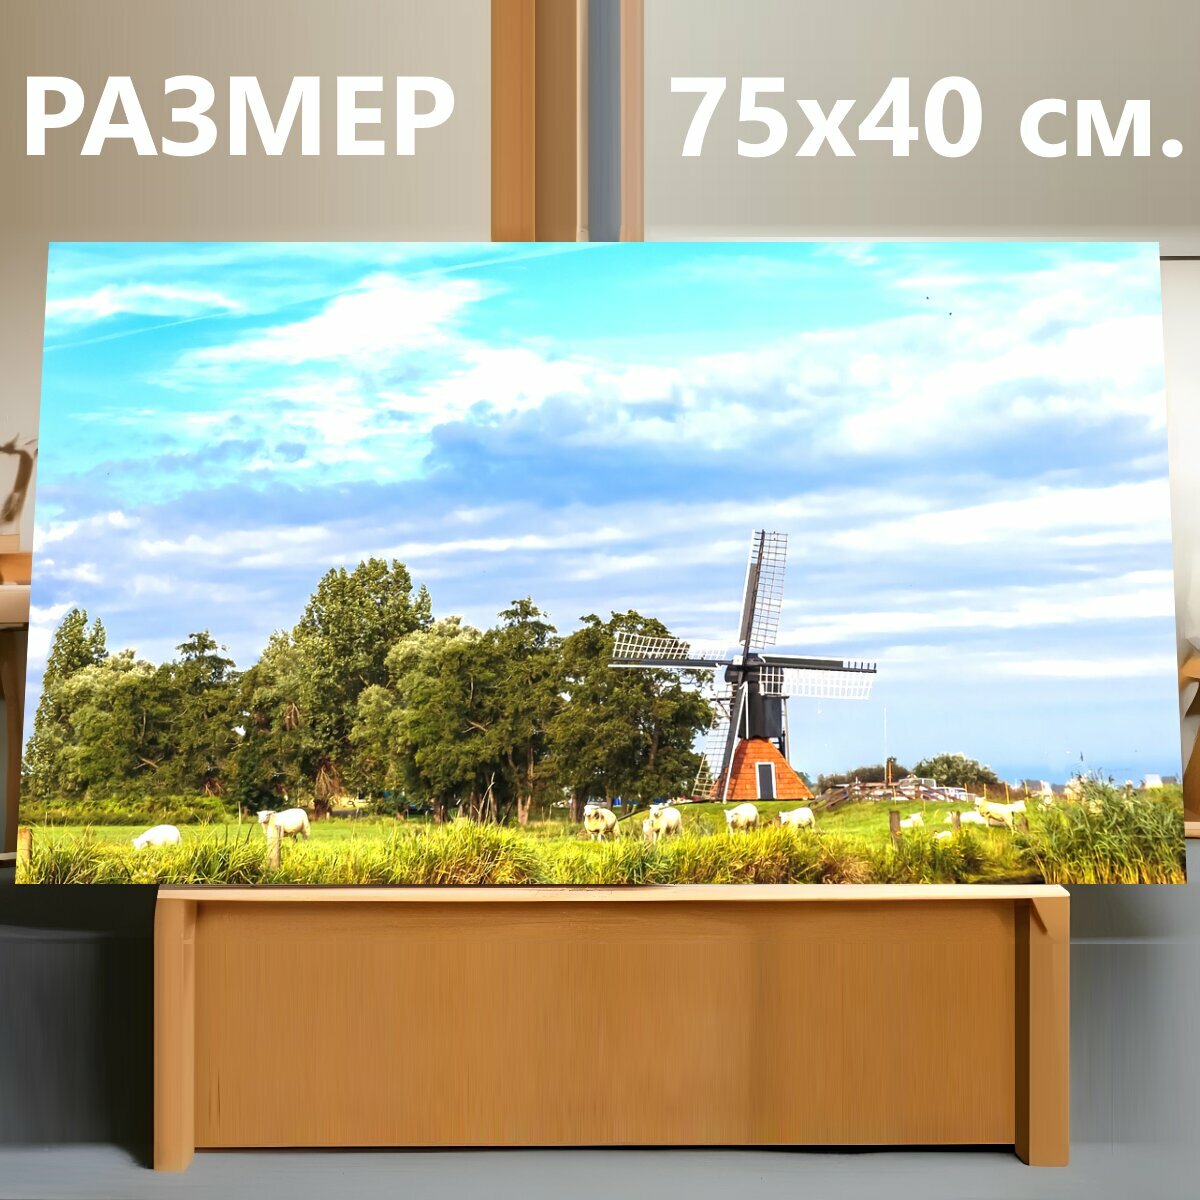 Картина на холсте "Ветряная мельница, пейзаж, нидерланды" на подрамнике 75х40 см. для интерьера